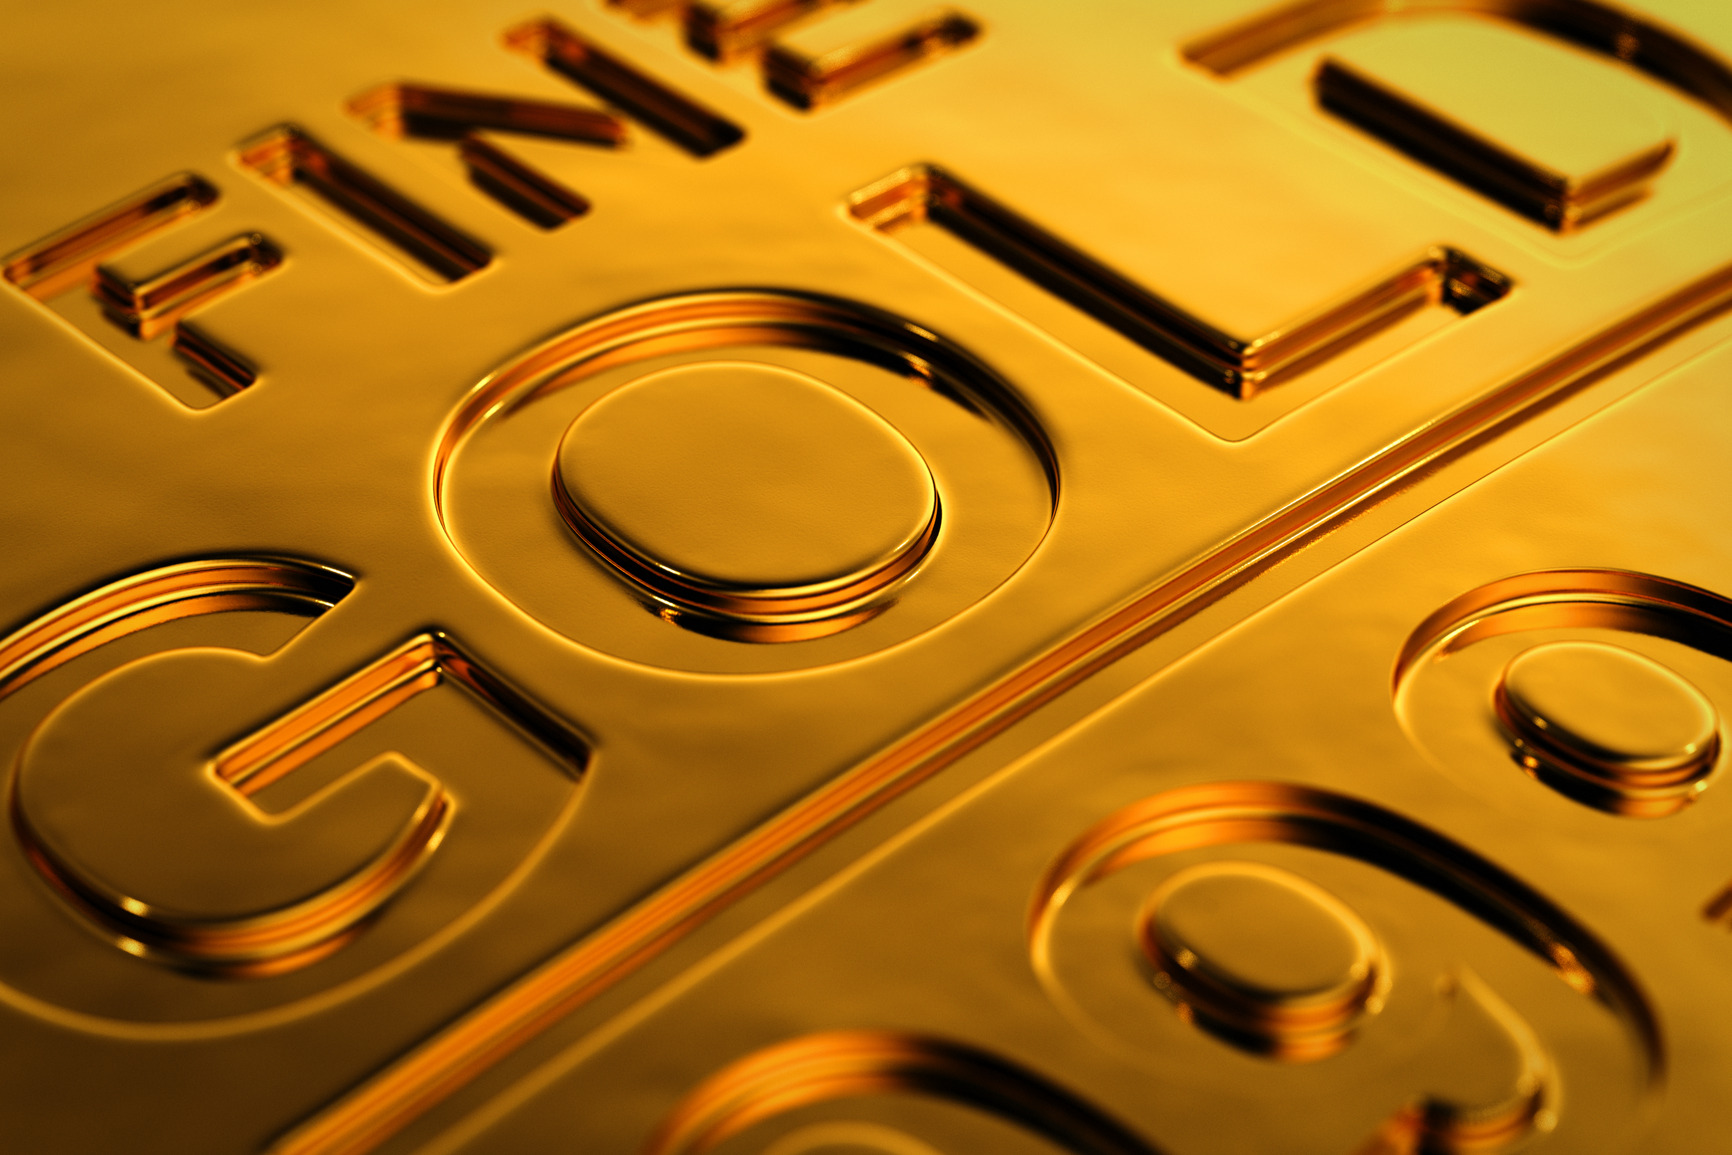 طلا در سطح قیمت های دیروز مبادله می شود / تقاضای طلای هند رشد هفتگی داشت